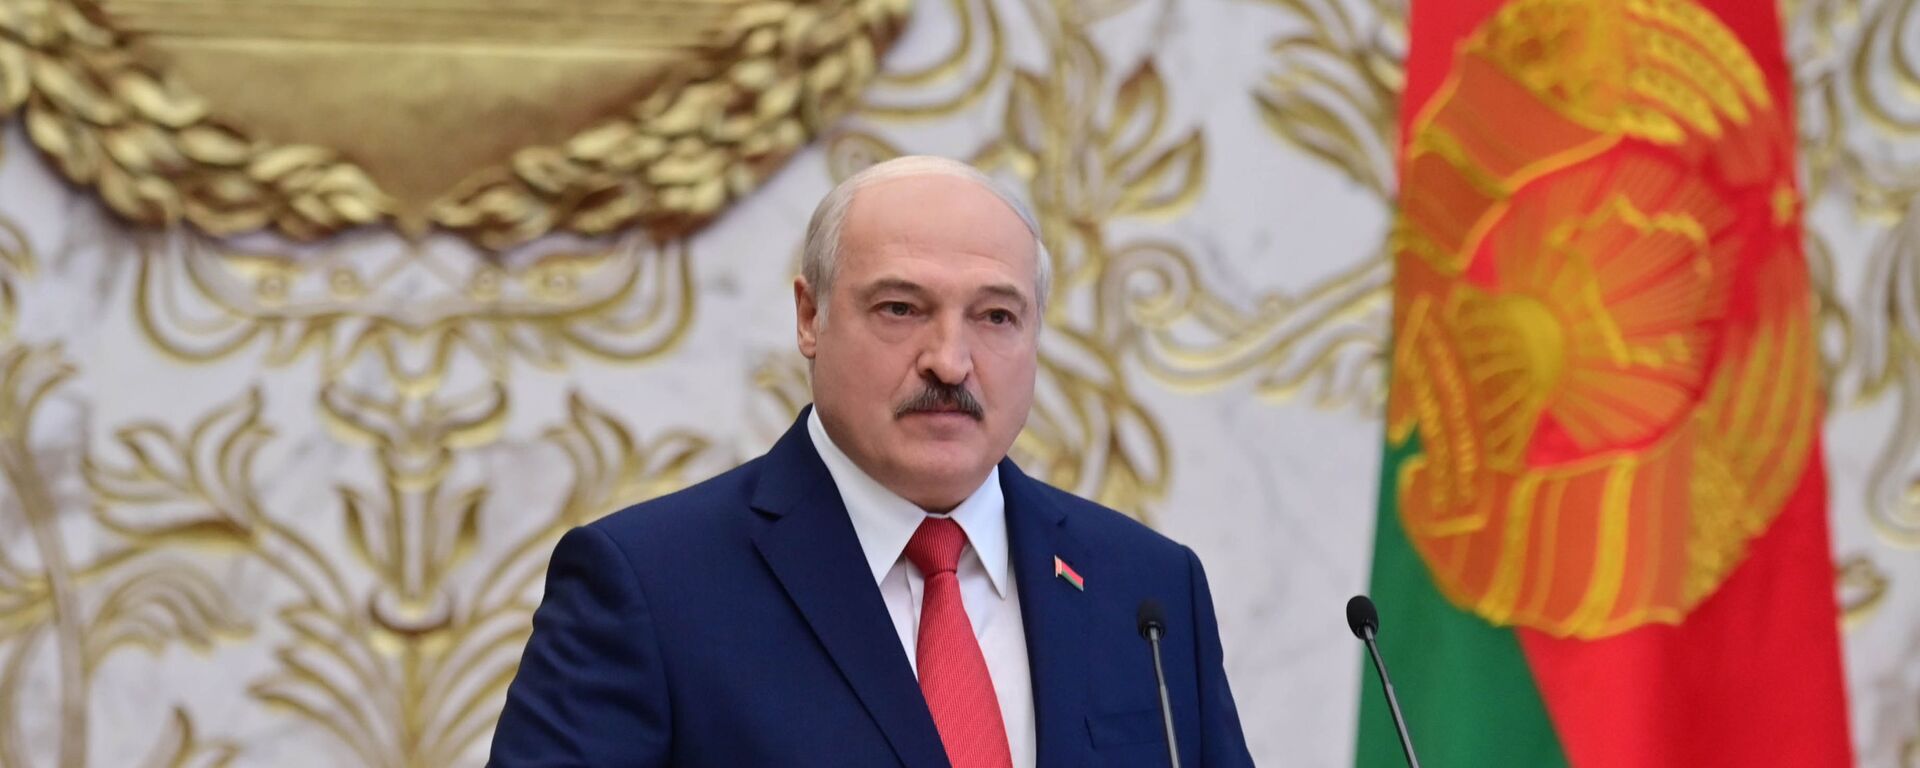 La investidura de Alexandr Lukashenko en Bielorrusia - Sputnik Mundo, 1920, 18.04.2021